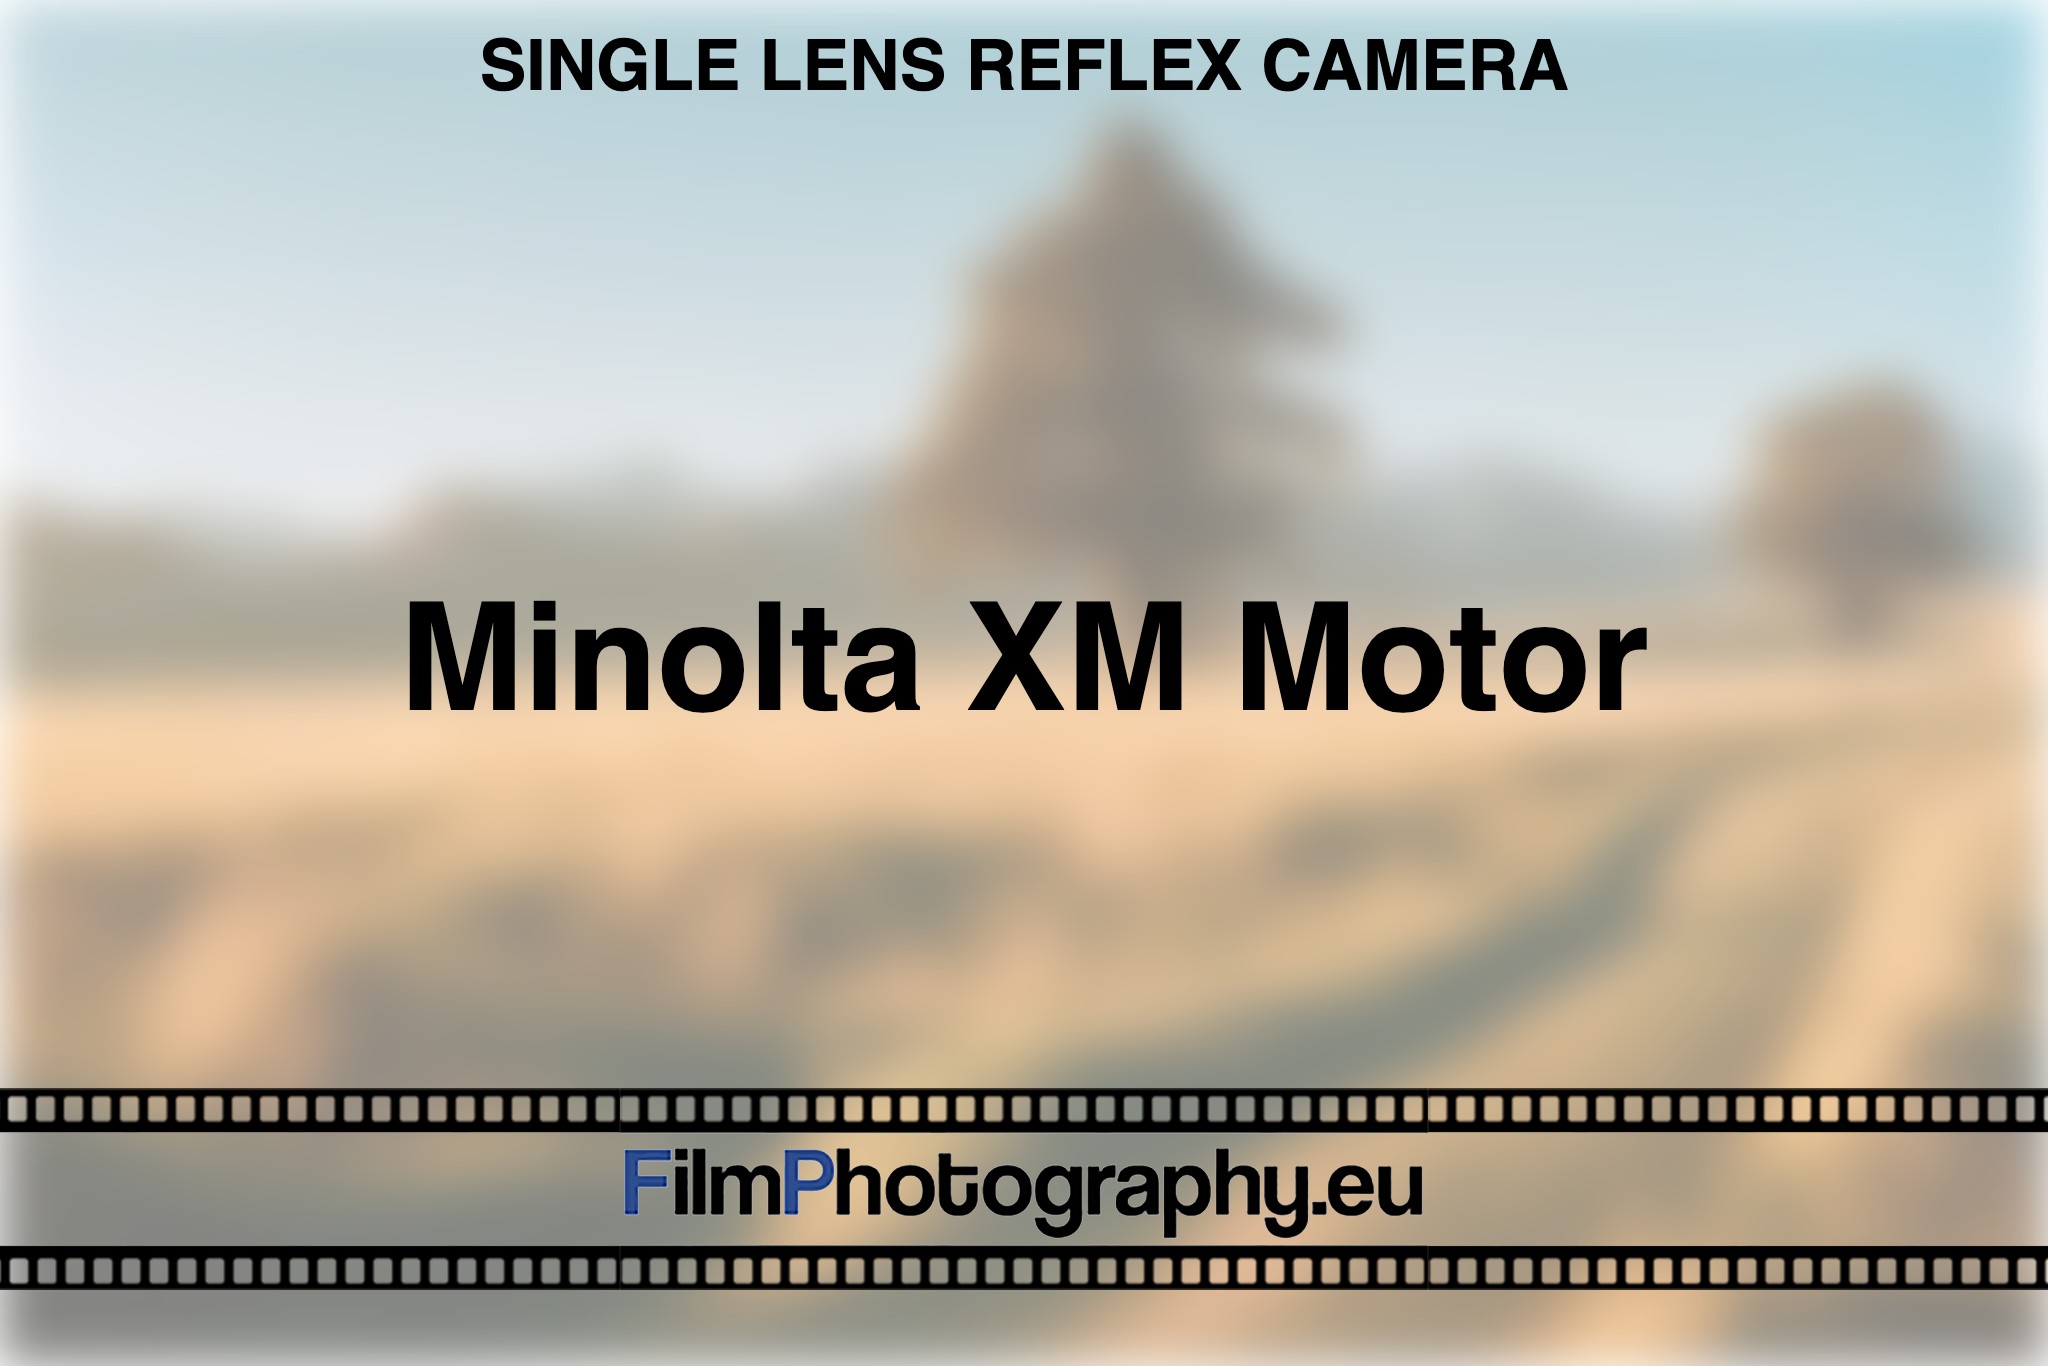 minolta-xm-motor-single-lens-reflex-camera-bnv